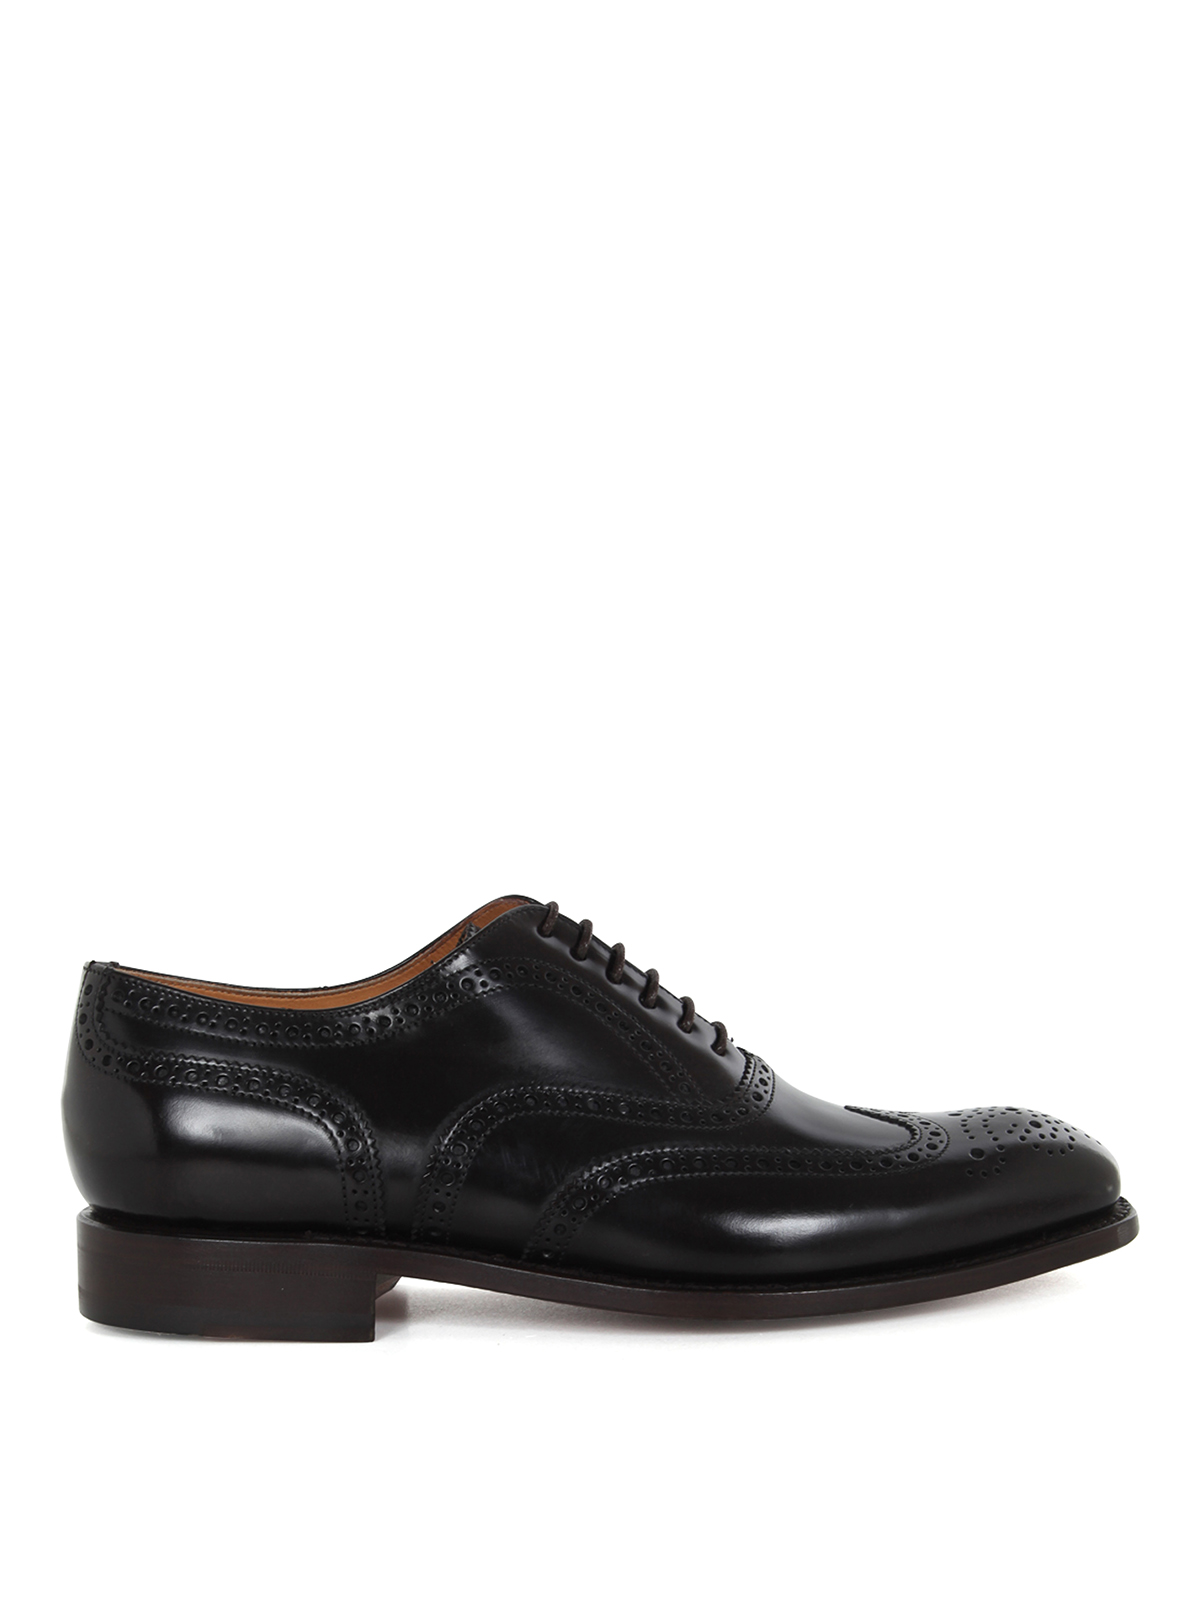 Shop Berwick 1707 Zapatos Con Cordones - Antik In Brown